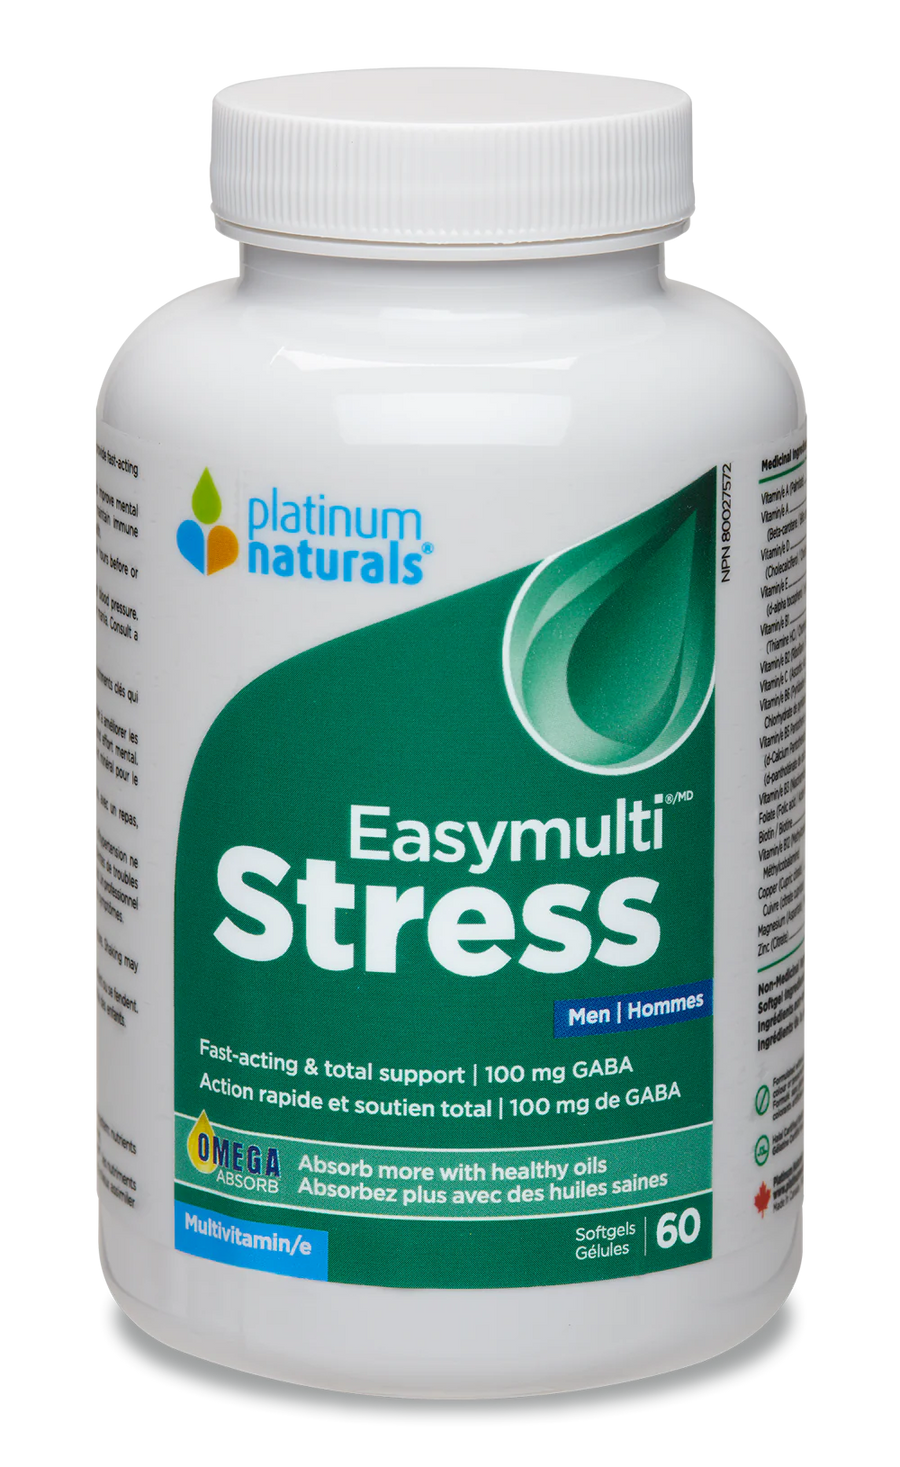 Platinum Naturals Easymulti Stress for Men 60 Softgels